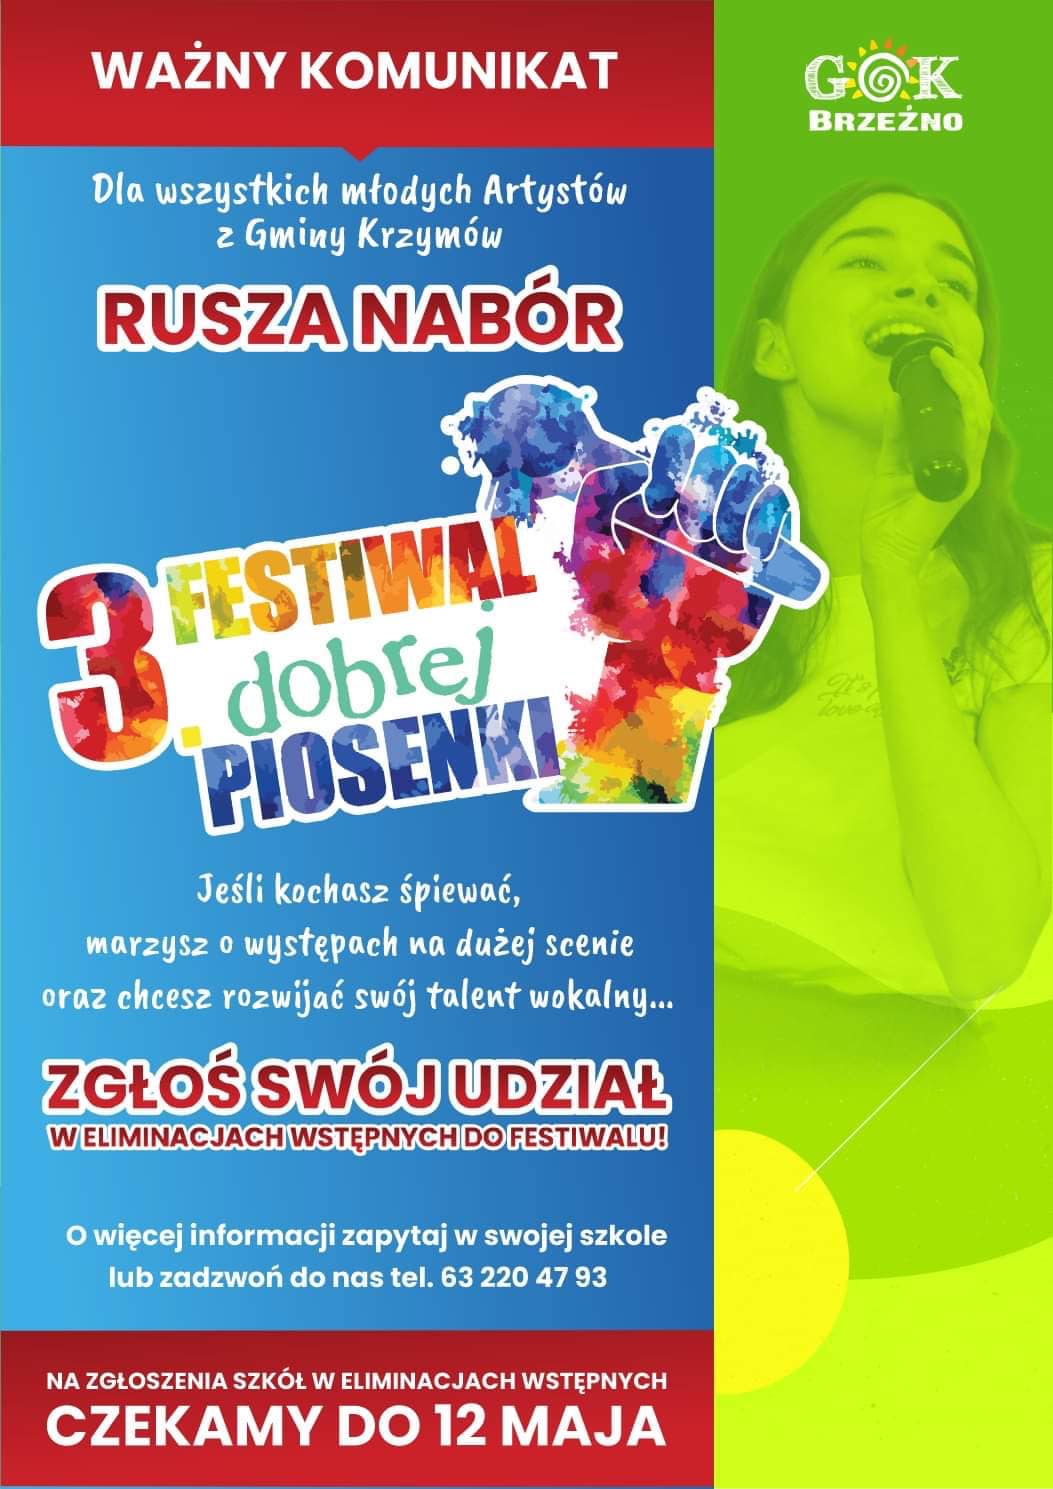 Plakat reklamujący festiwal